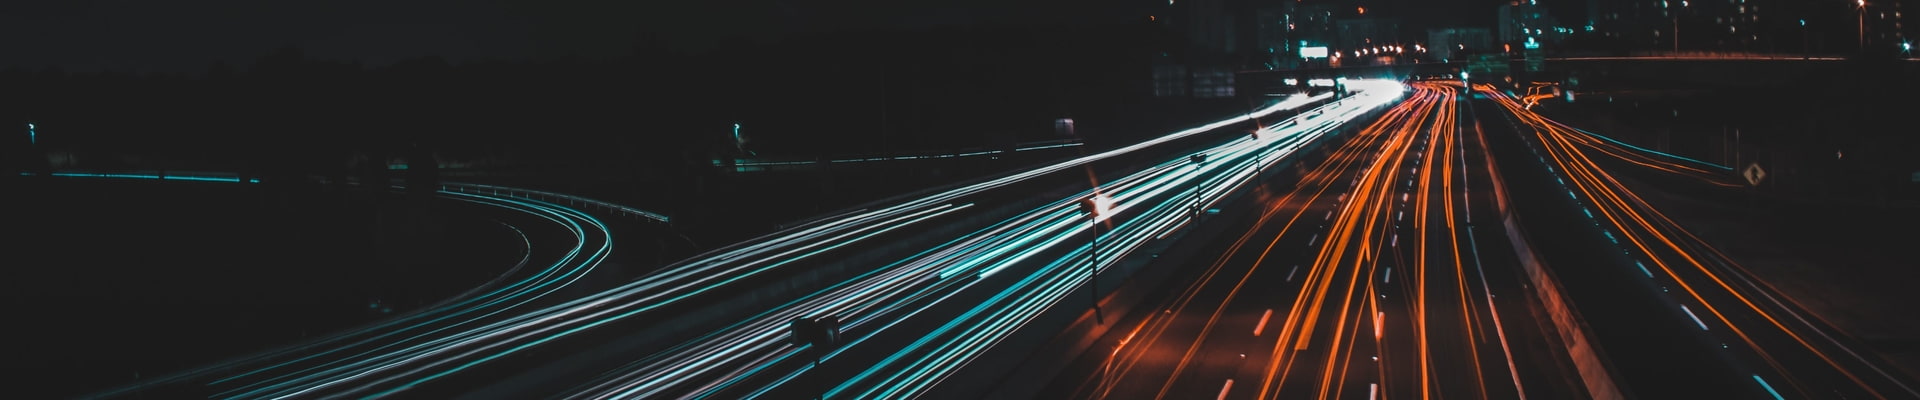 Unsplash Bild von Cris Ovalle, Aufnahme der Lichter auf einer Autobahn in der Nacht